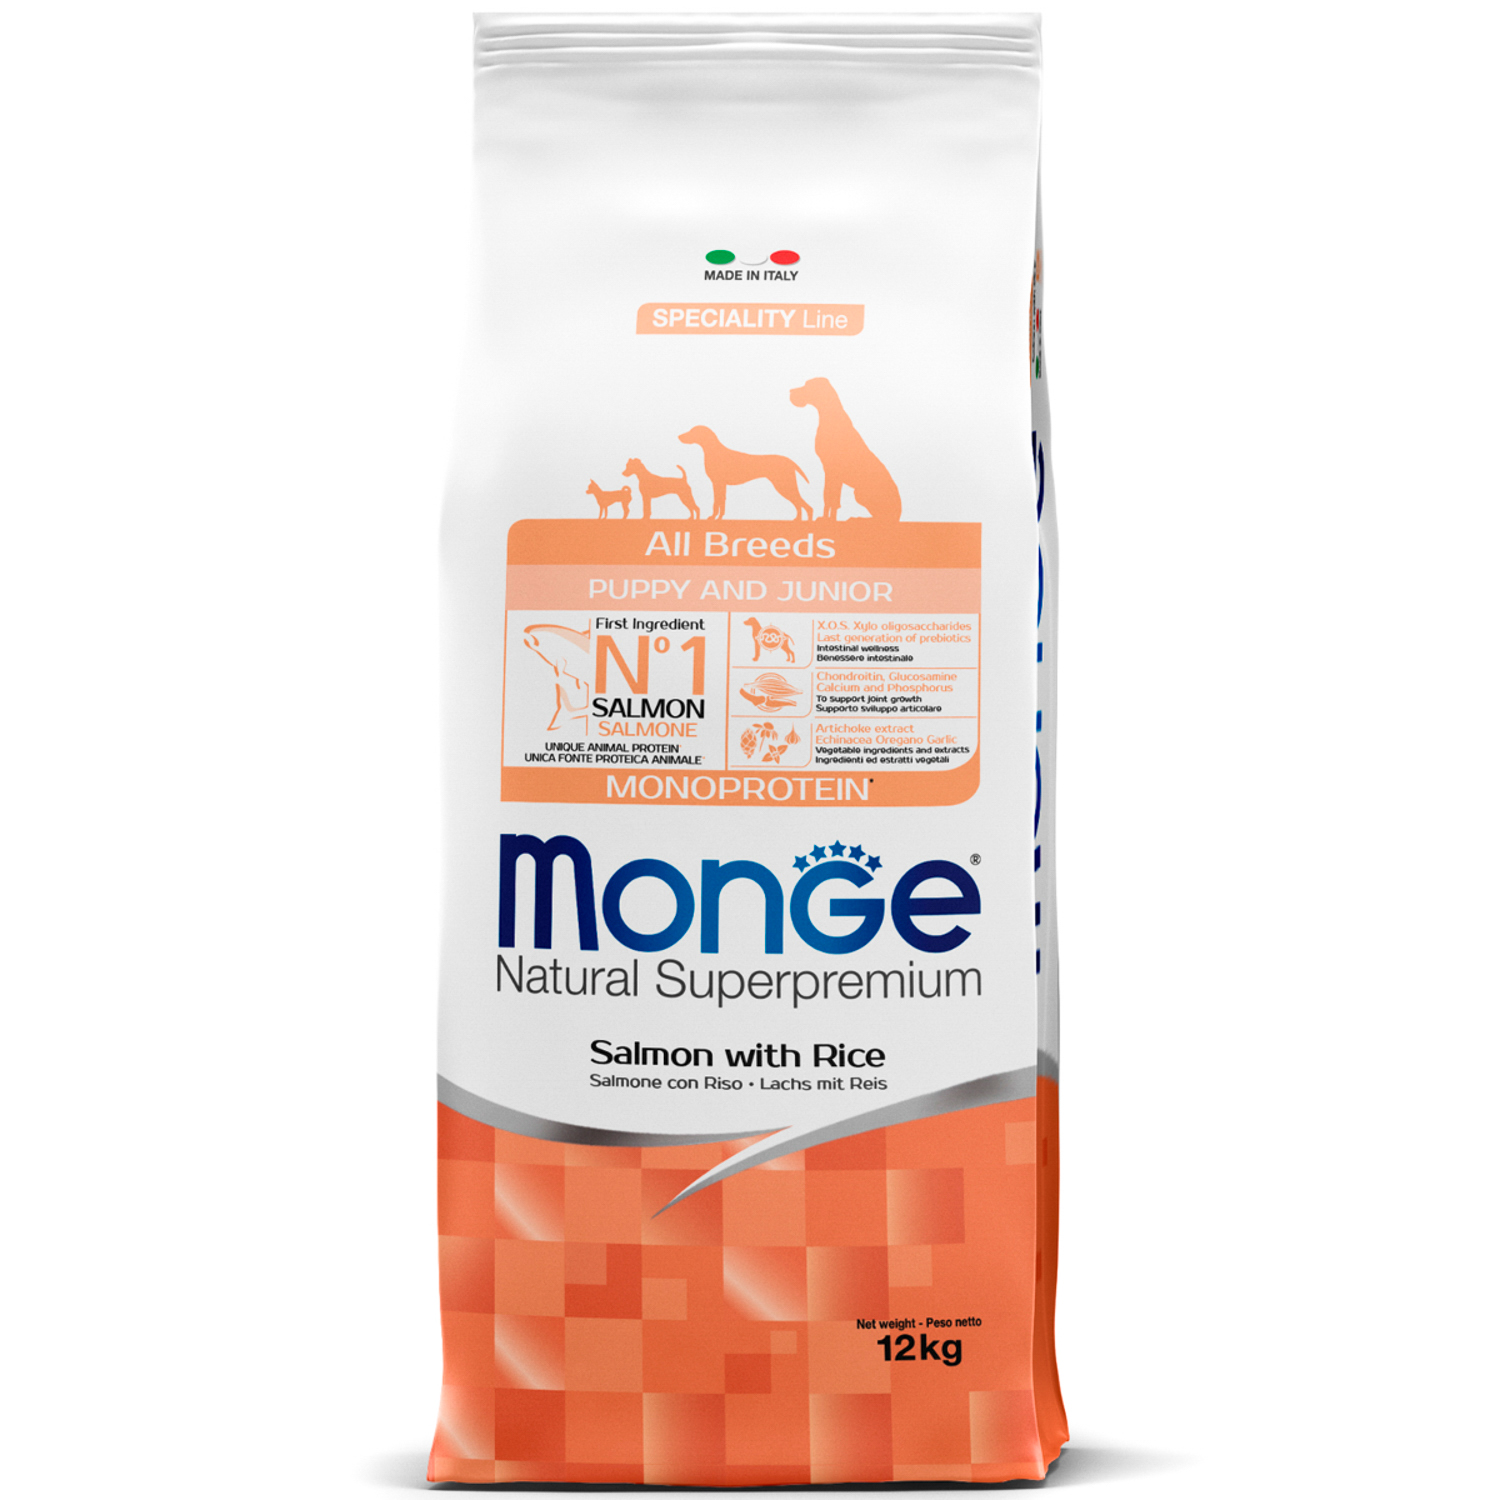 Сухой корм Monge Dog Speciality Line Monoprotein Puppy&Junior корм для щенков всех пород, из лосося с рисом 12 кг